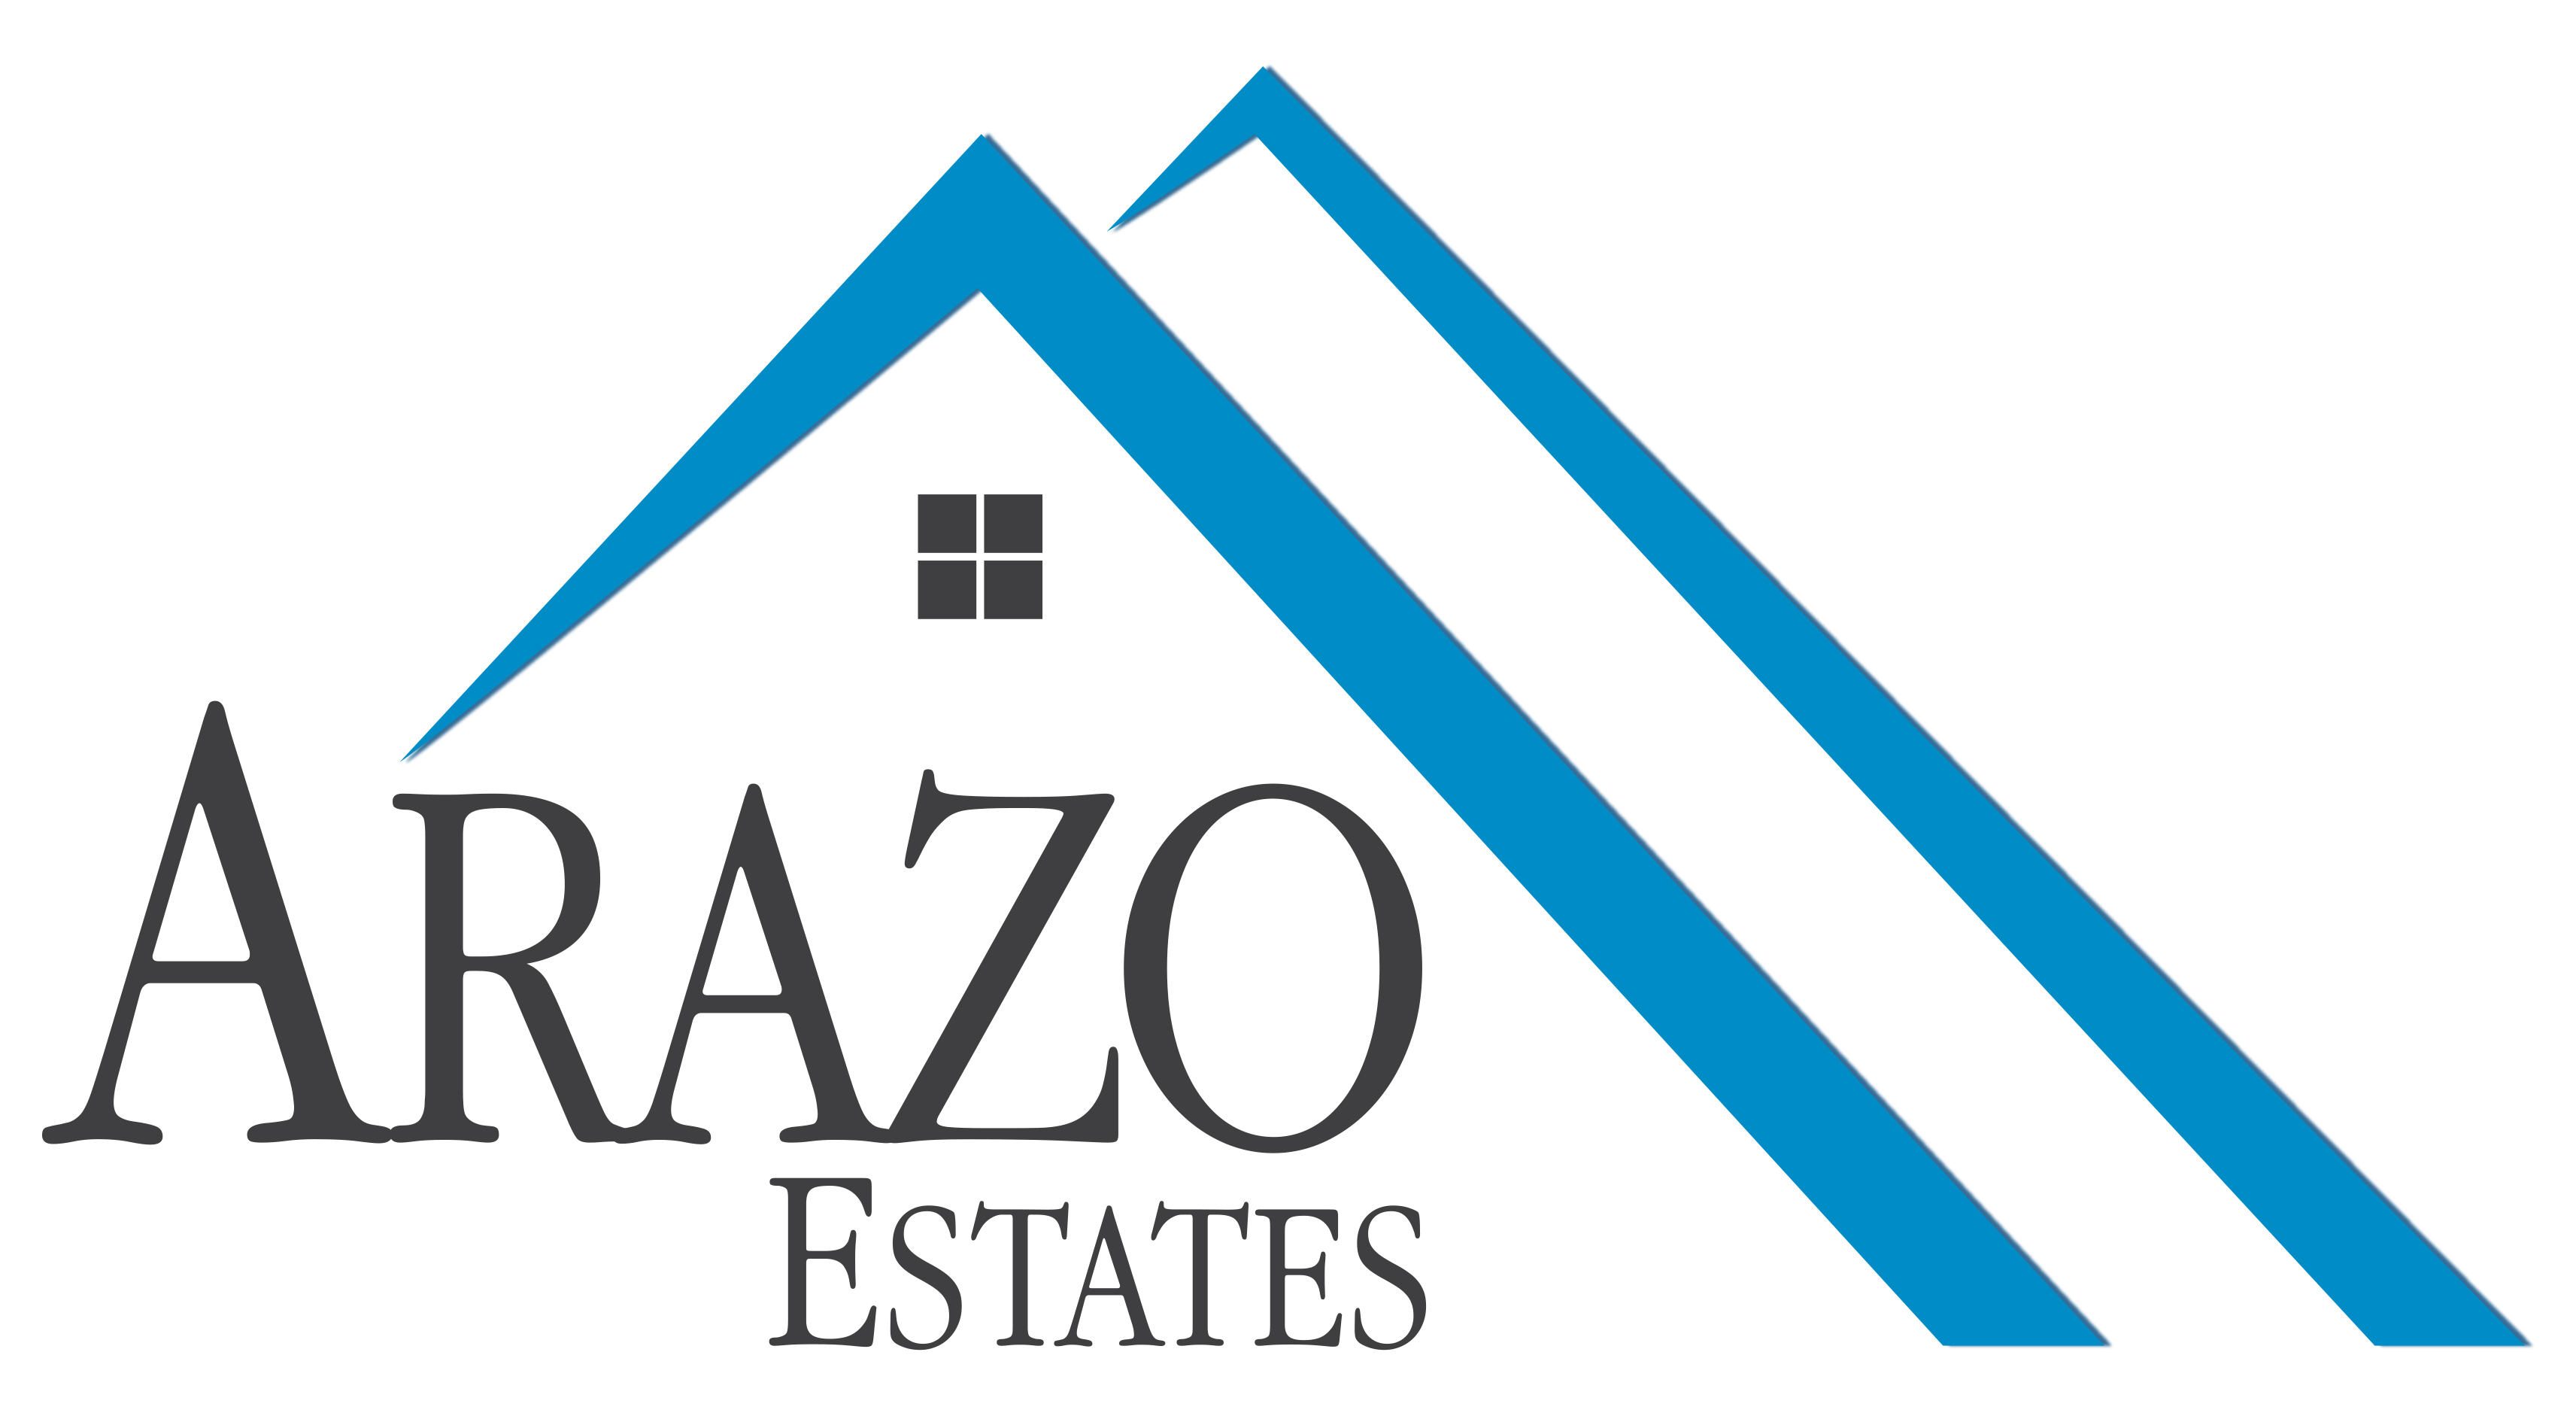 Arazo Estates Ltd